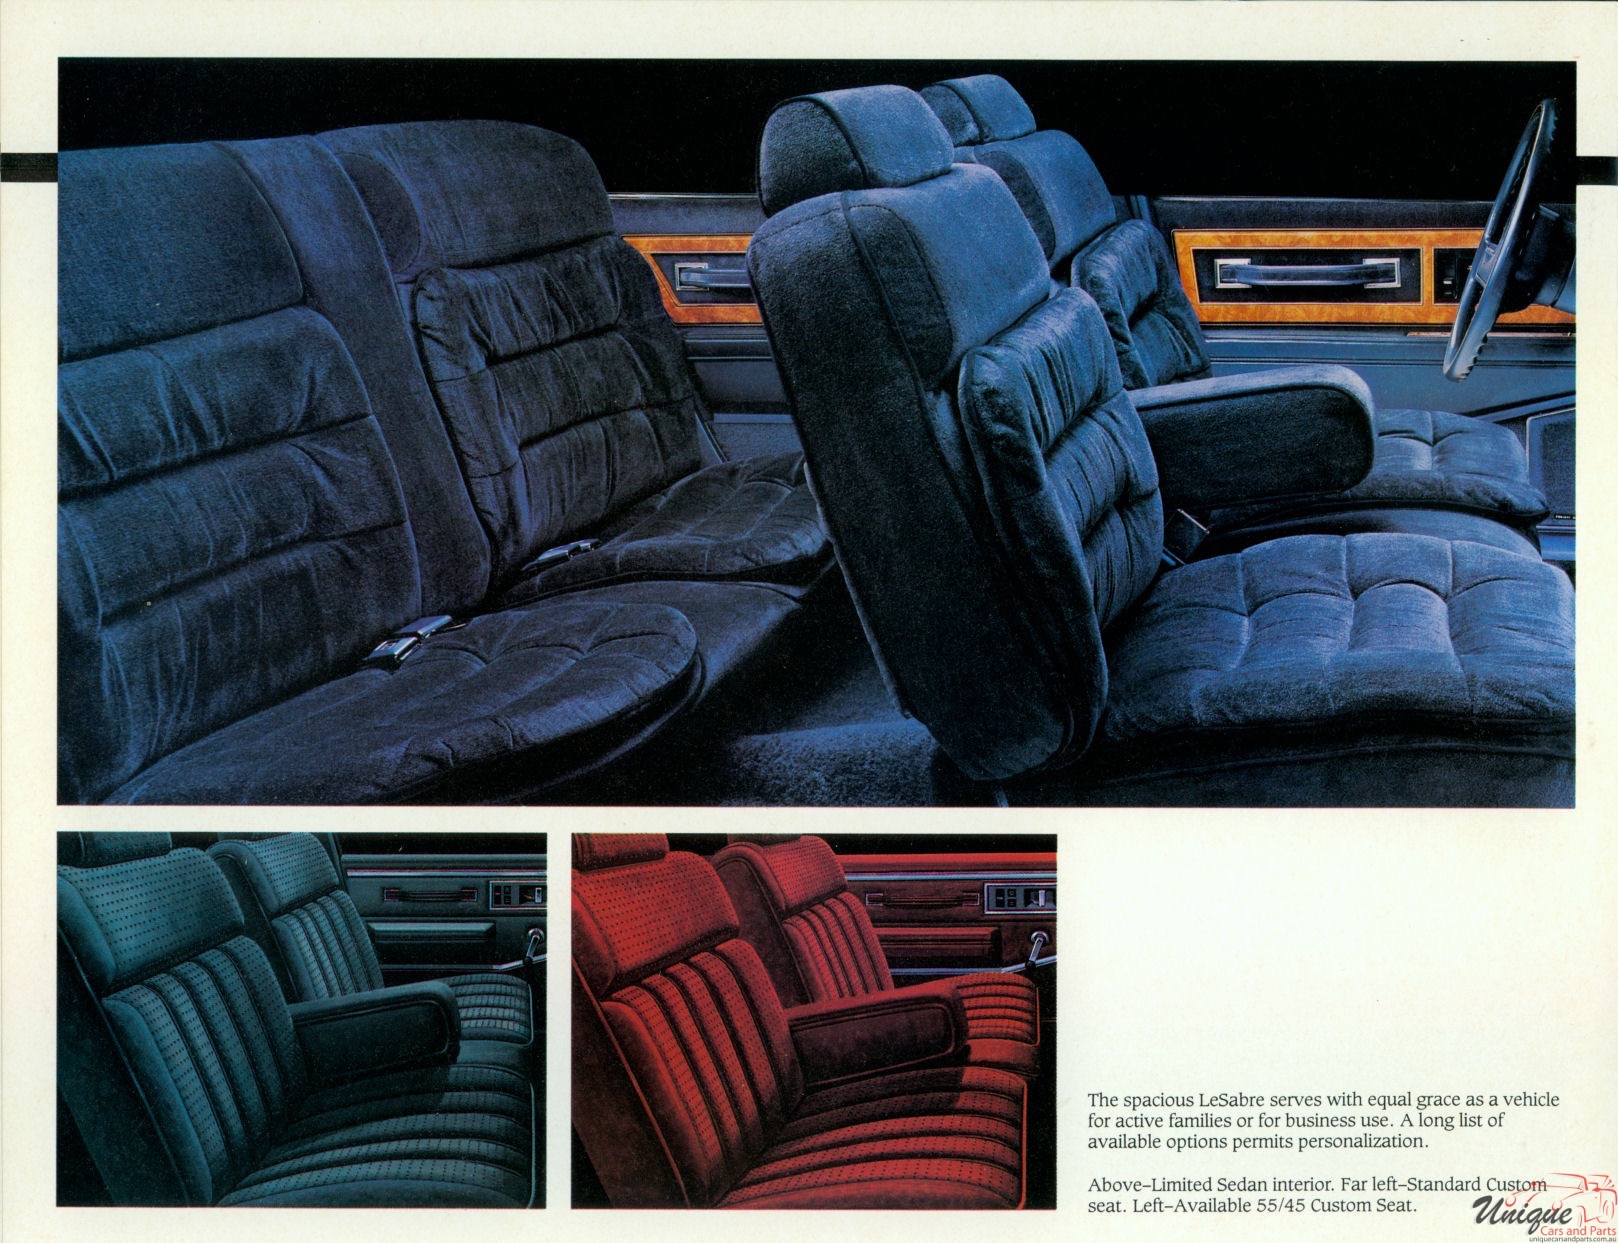 1986 Buick LeSabre (Canada) Brochure Page 2